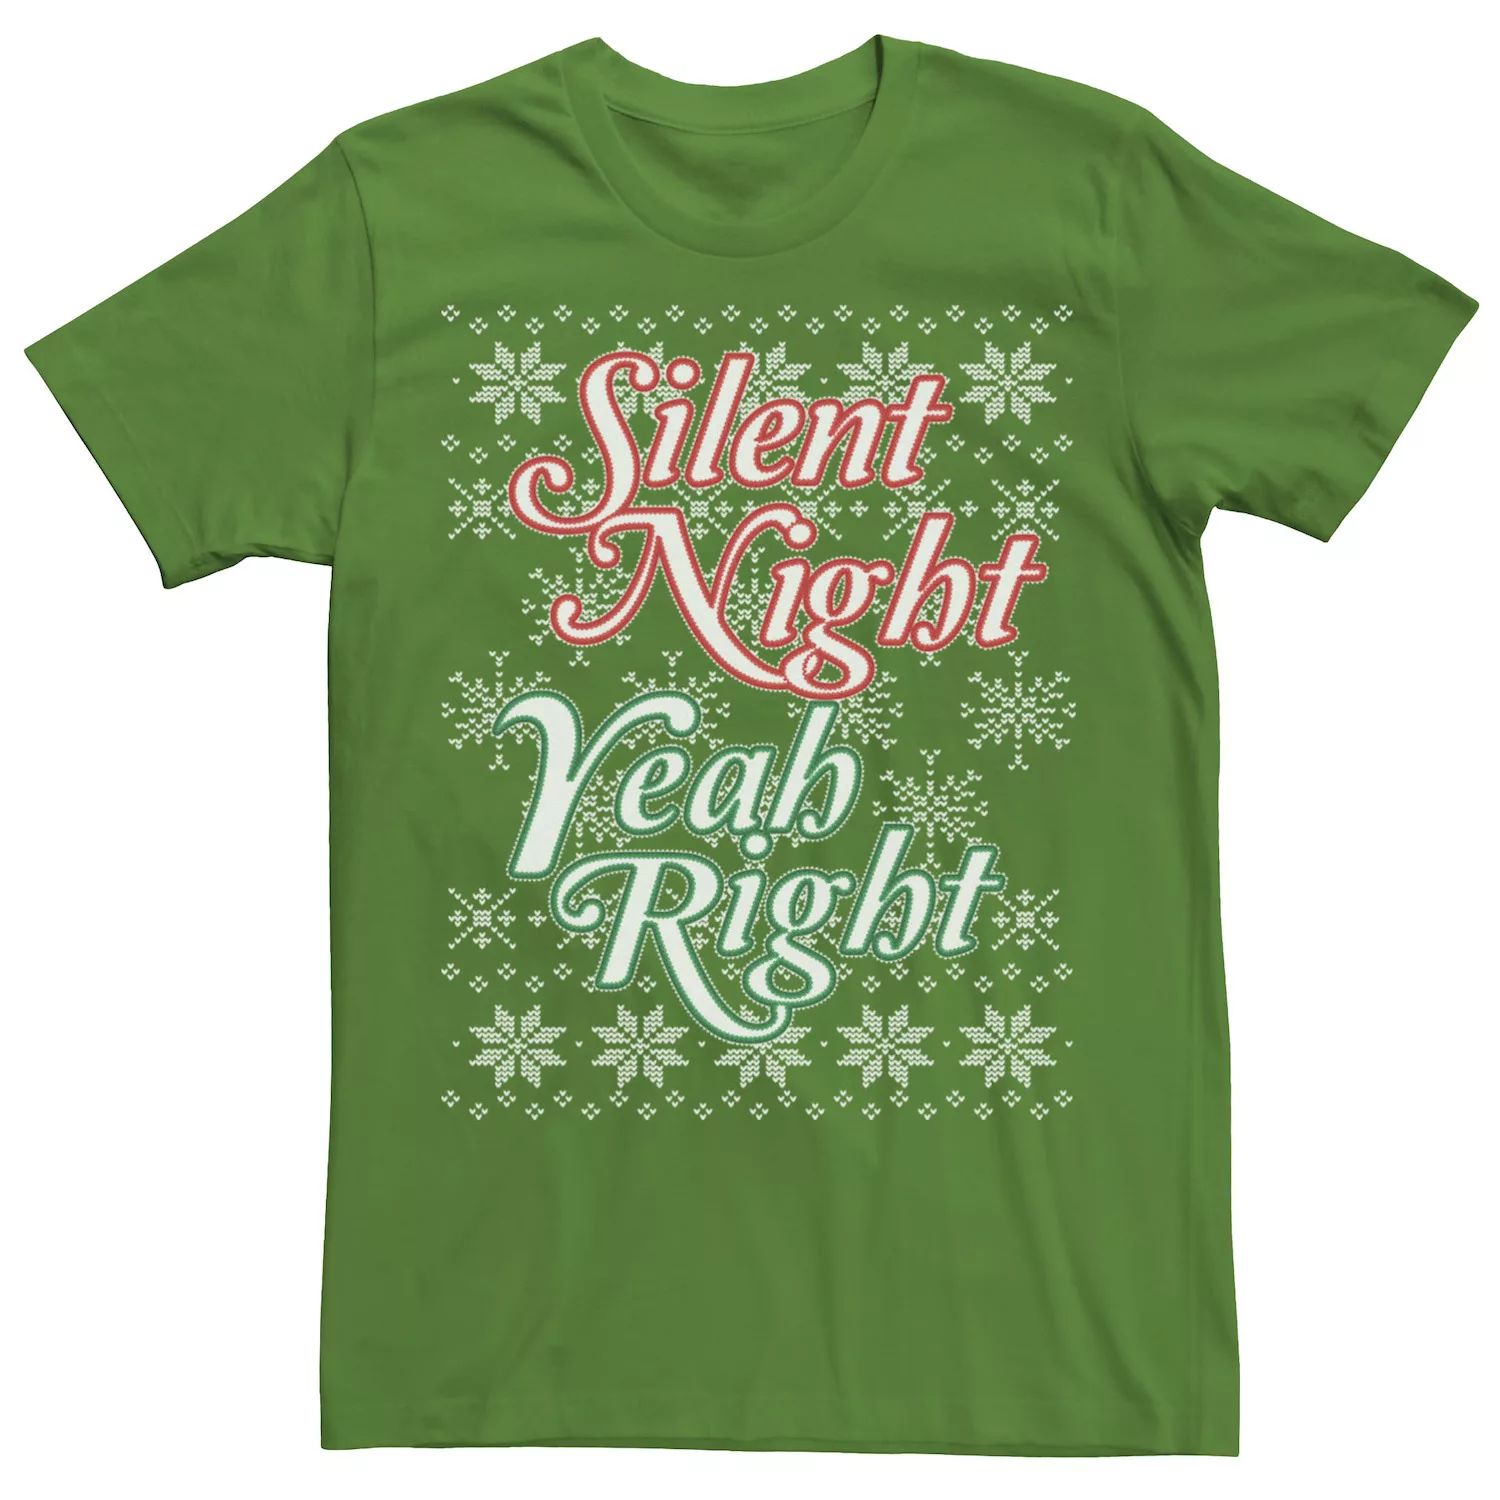 Мужская трикотажная футболка Silent Night Yeah Right Licensed Character yeah right nyc футболка